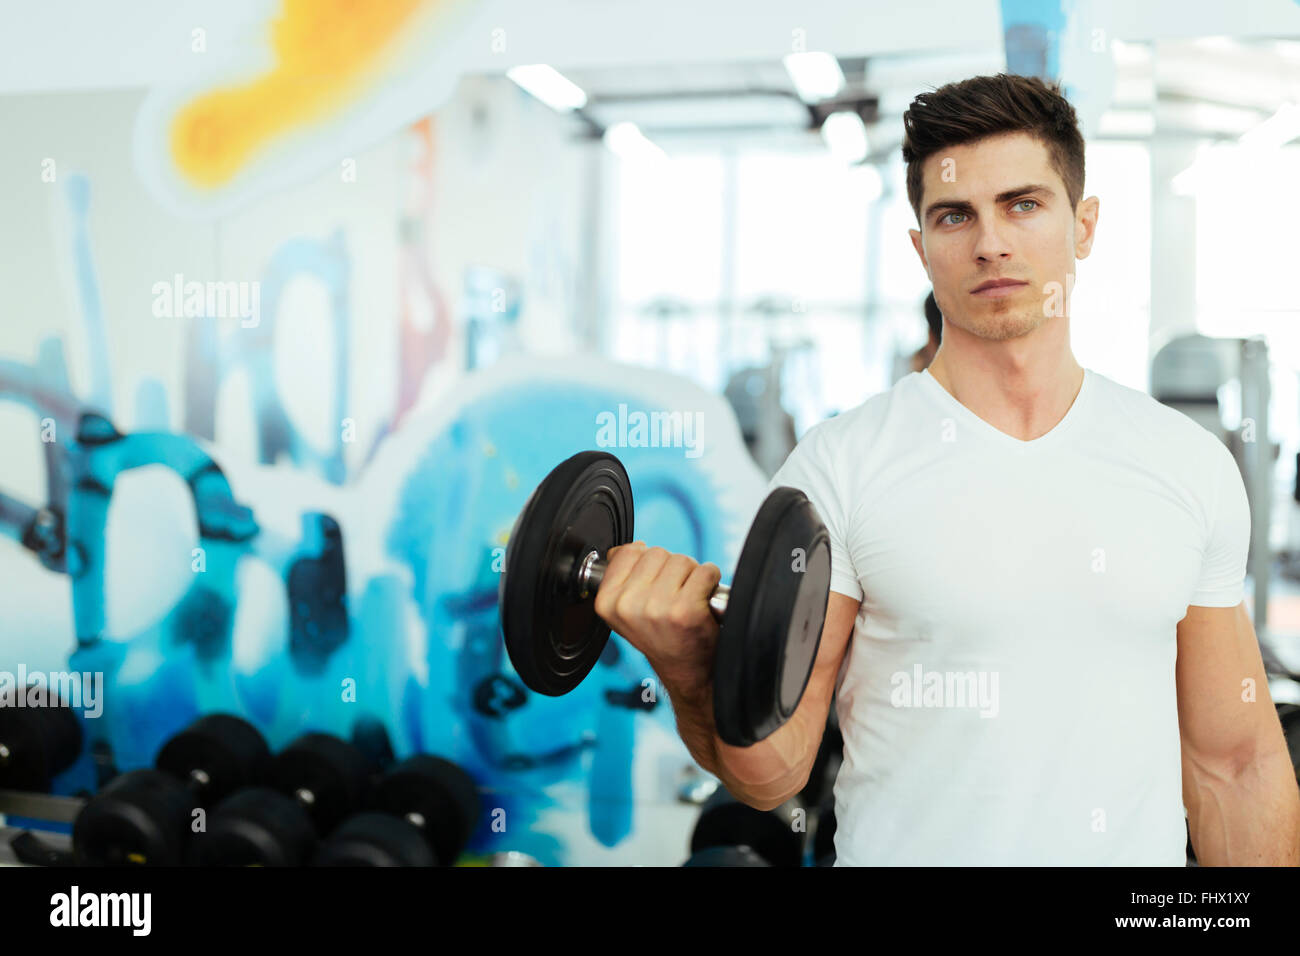 Handsome man lifting weights in gym et demeurer en forme Banque D'Images